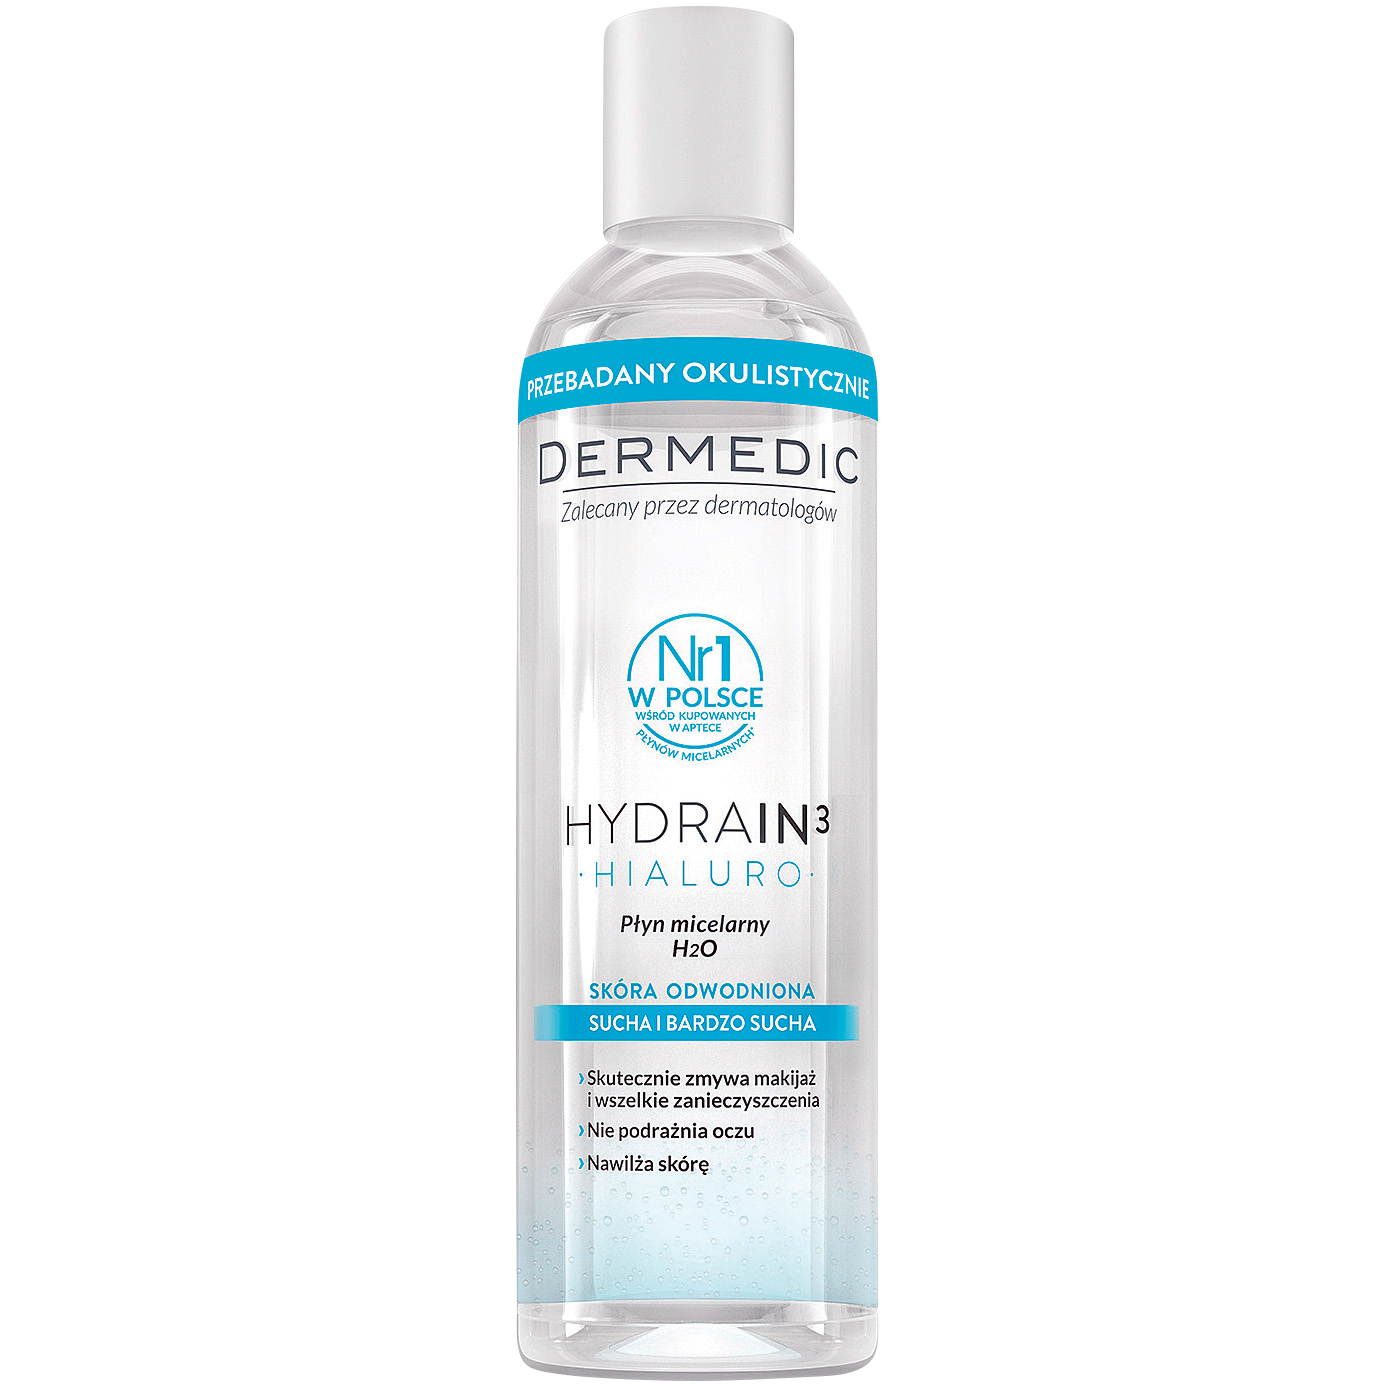 Dermedic Hydrain3 Hialuro мицеллярная вода H2O для лица, 200 мл